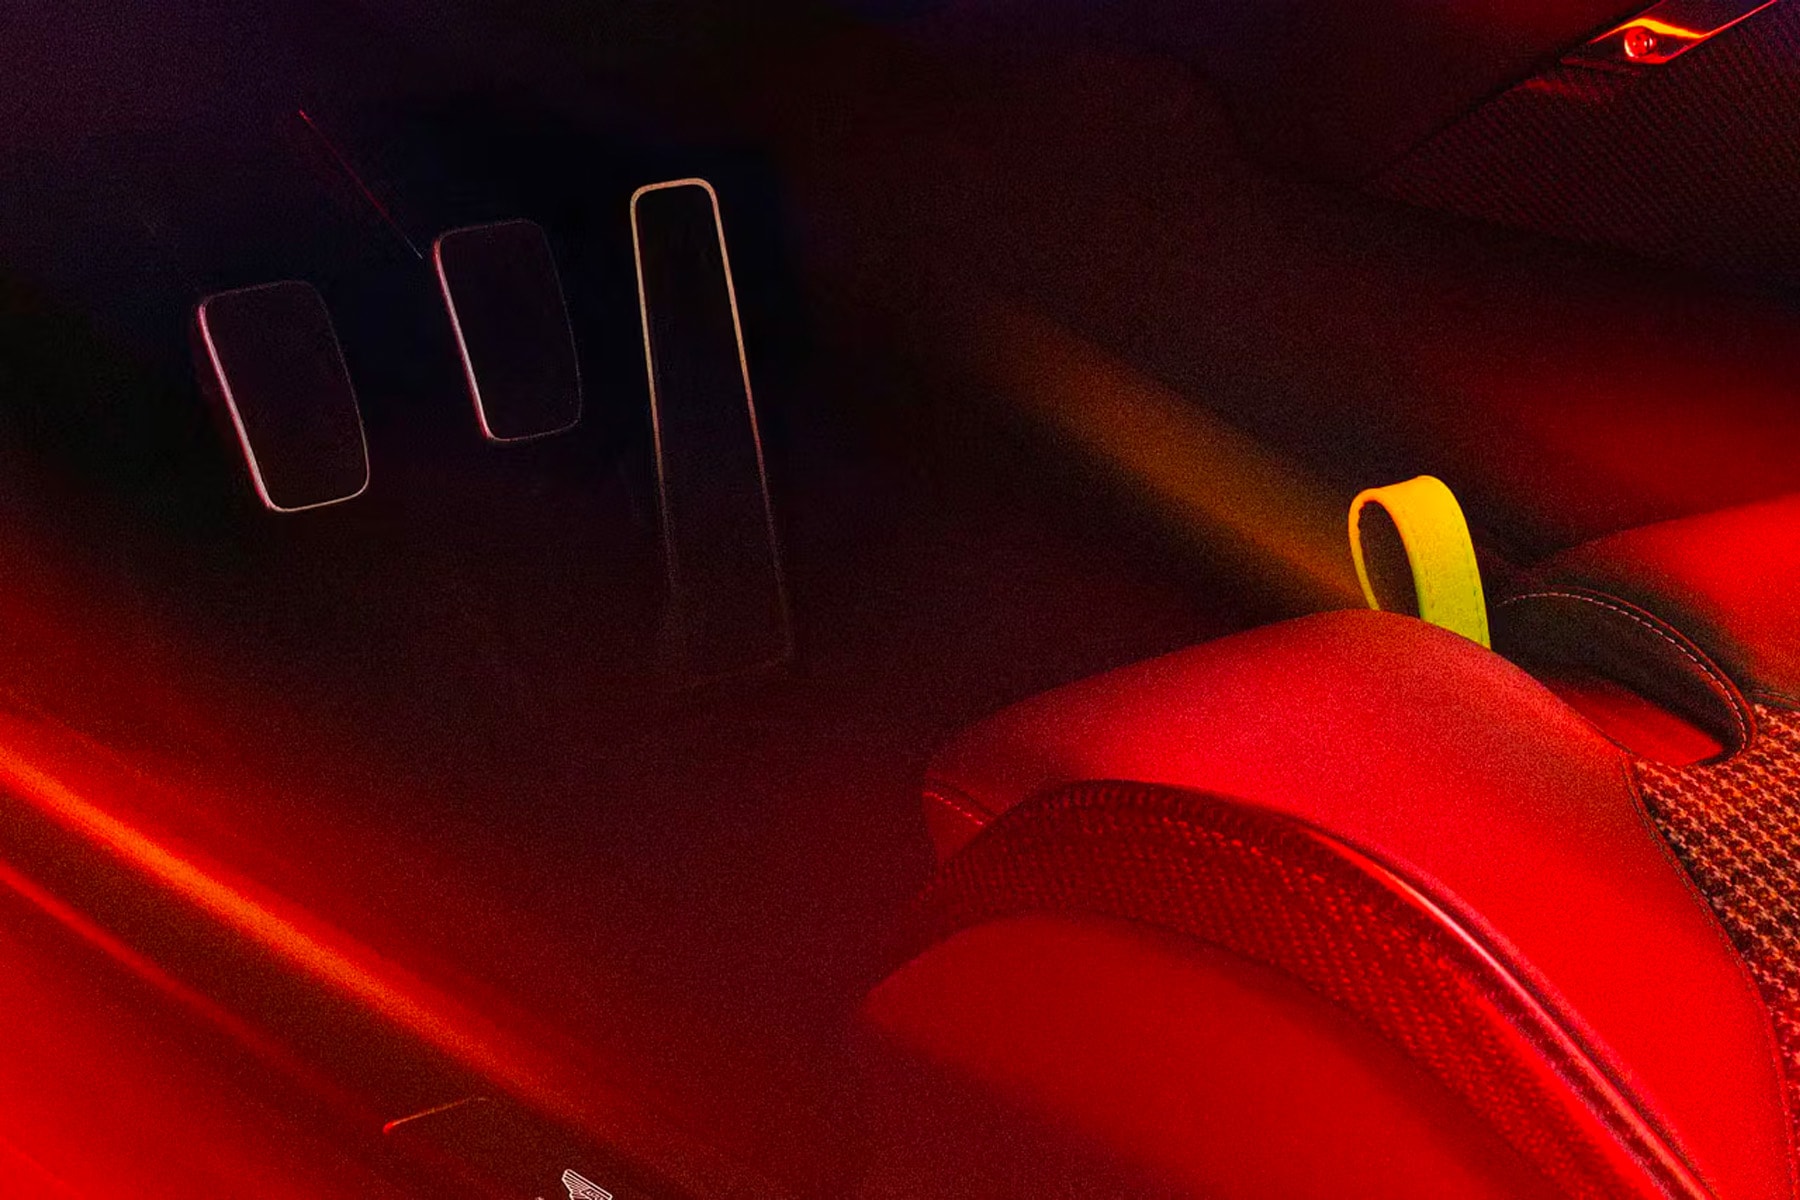 Aston Martin 正式發表全新 V12 超跑車型 Valour